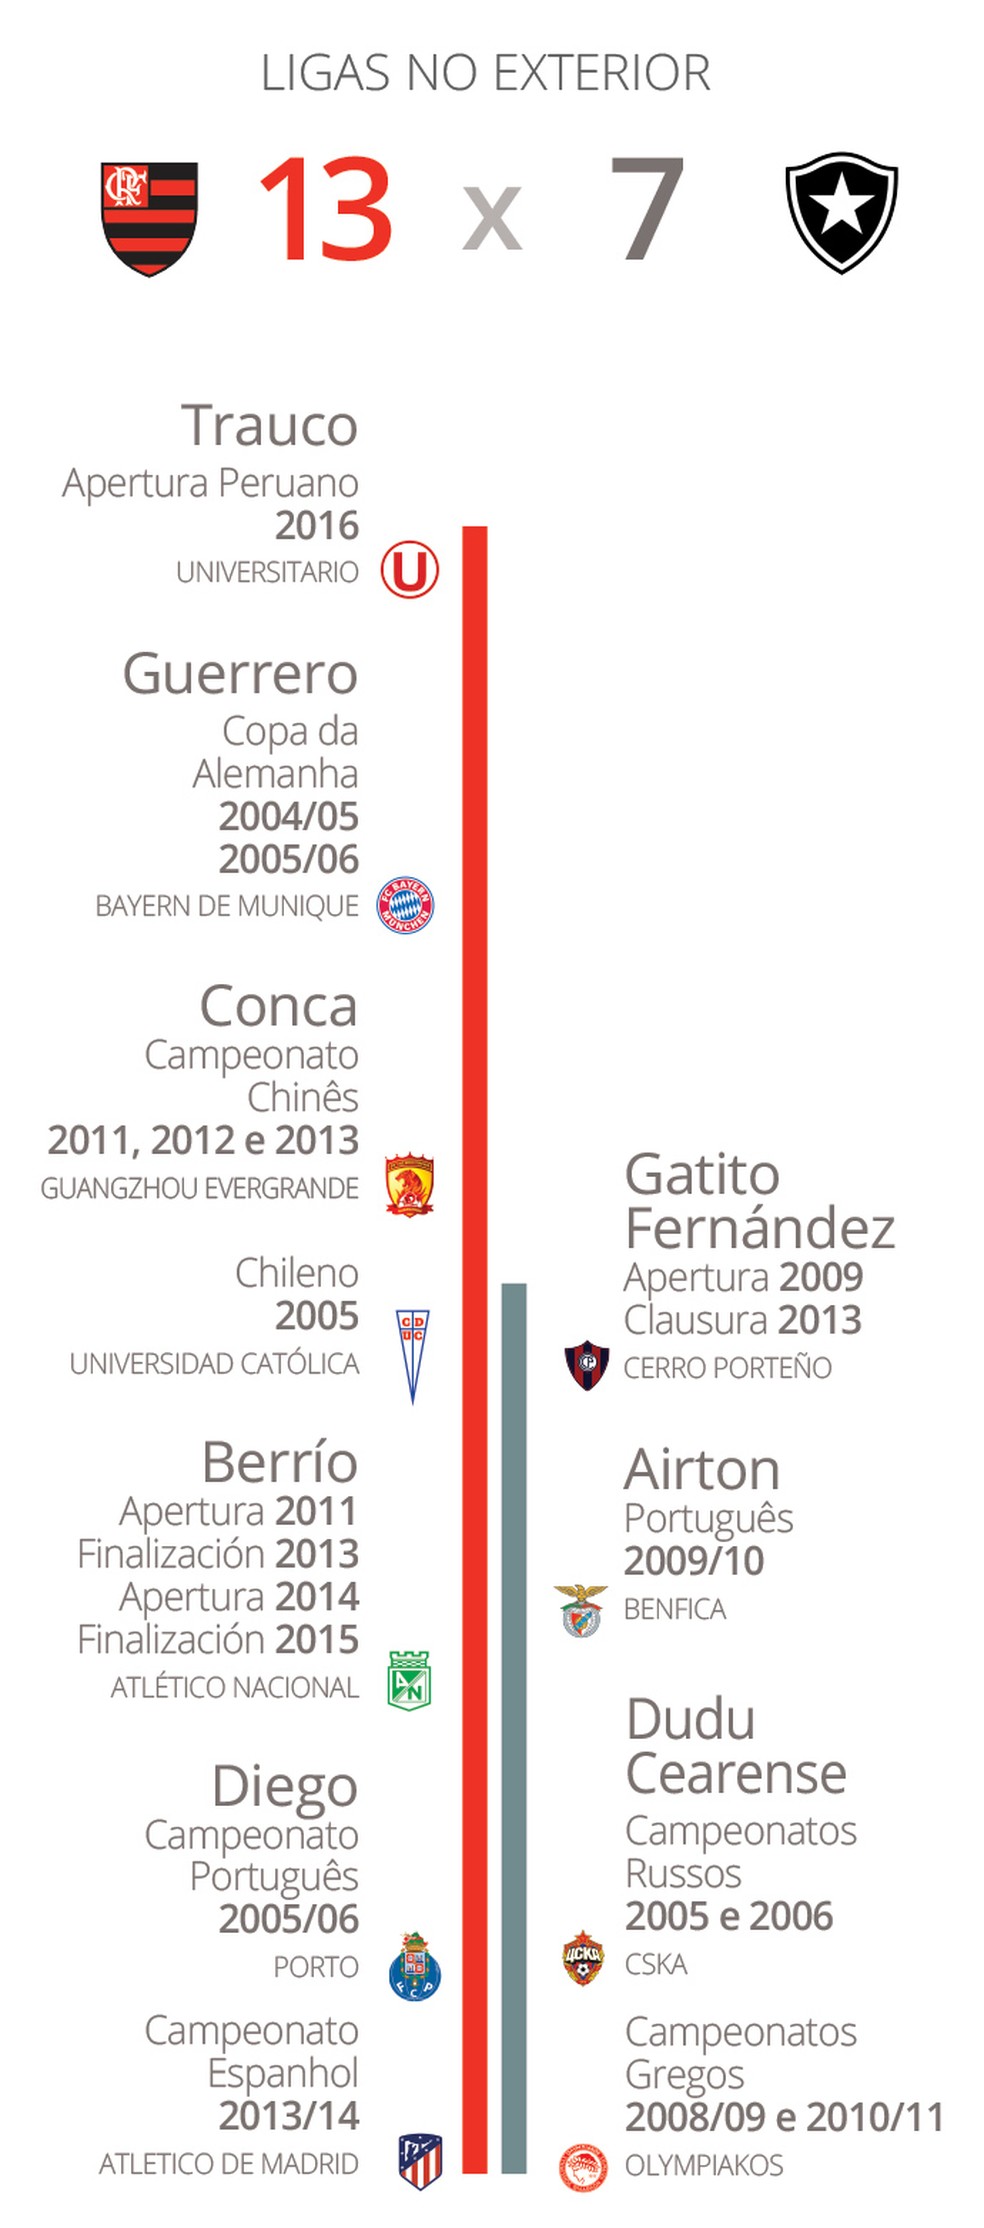 Superioridade também é grande no número de Ligas: Berrío tem quatro na Colômbia (Foto: GloboEsporte.com)